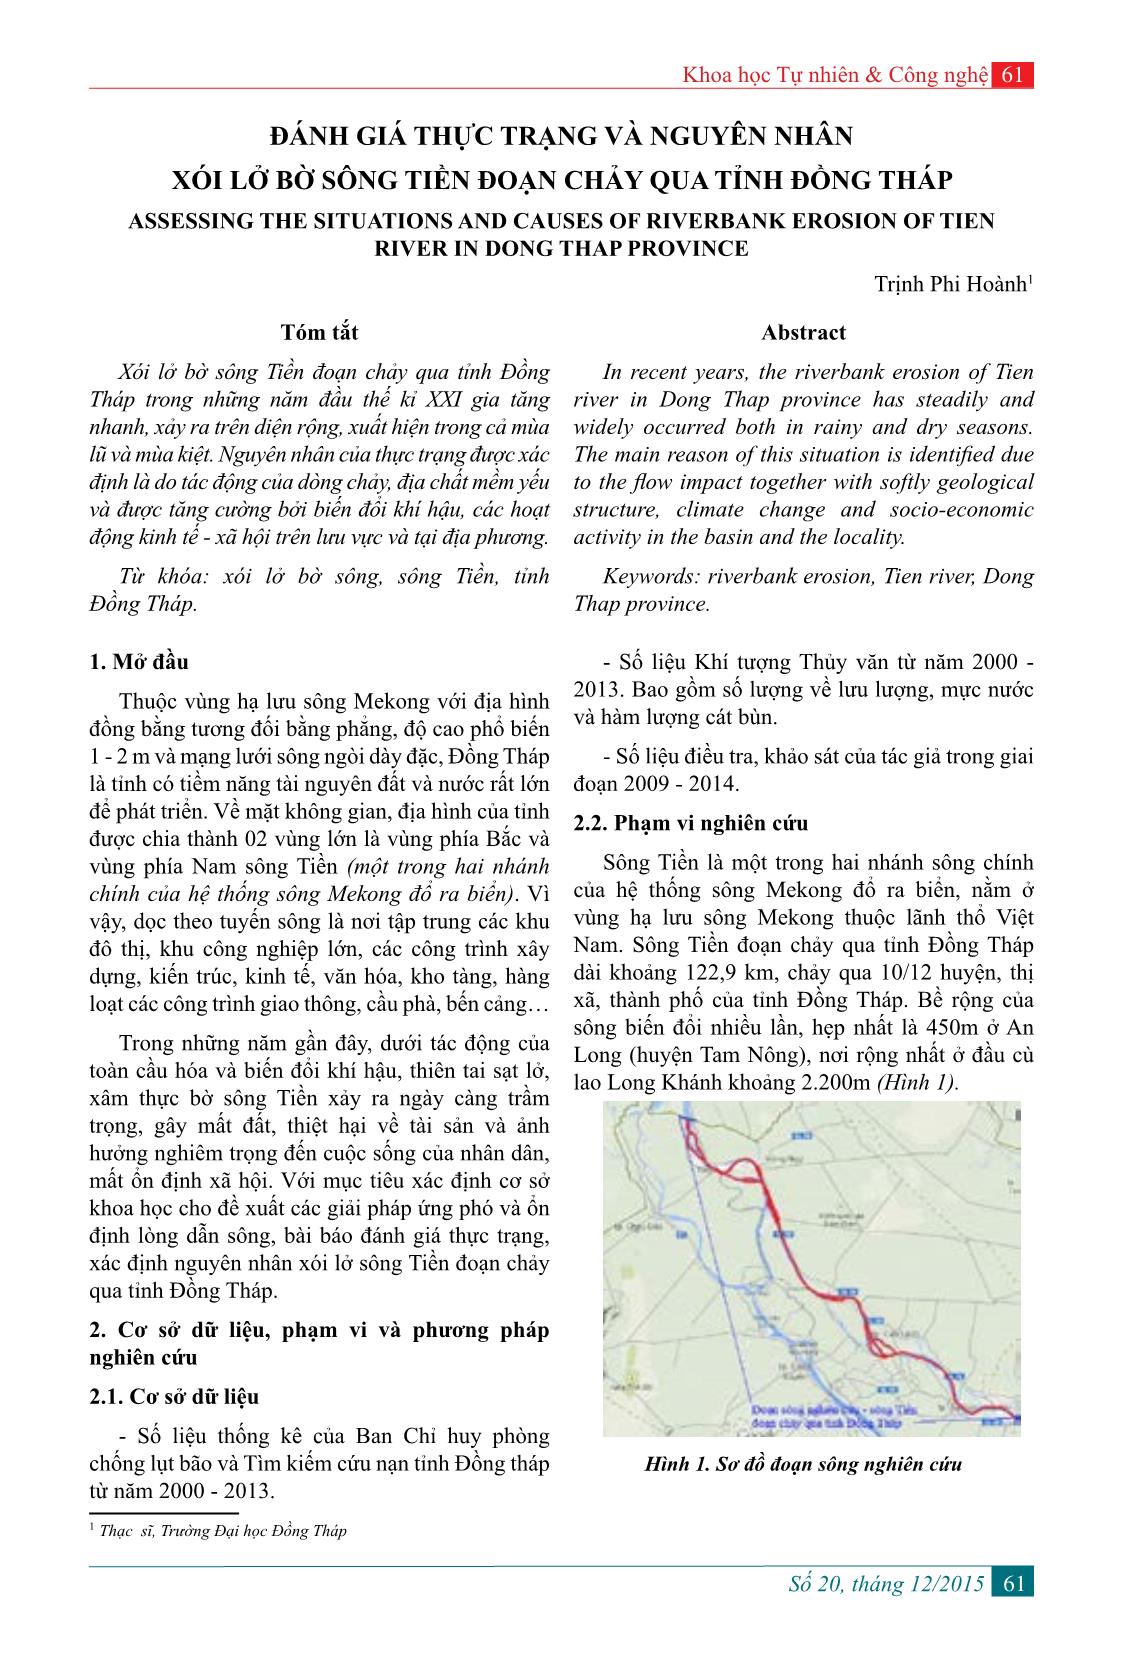 Đánh giá thực trạng và nguyên nhân xói lở bờ sông Tiền đoạn chảy qua tỉnh Đồng Tháp trang 1